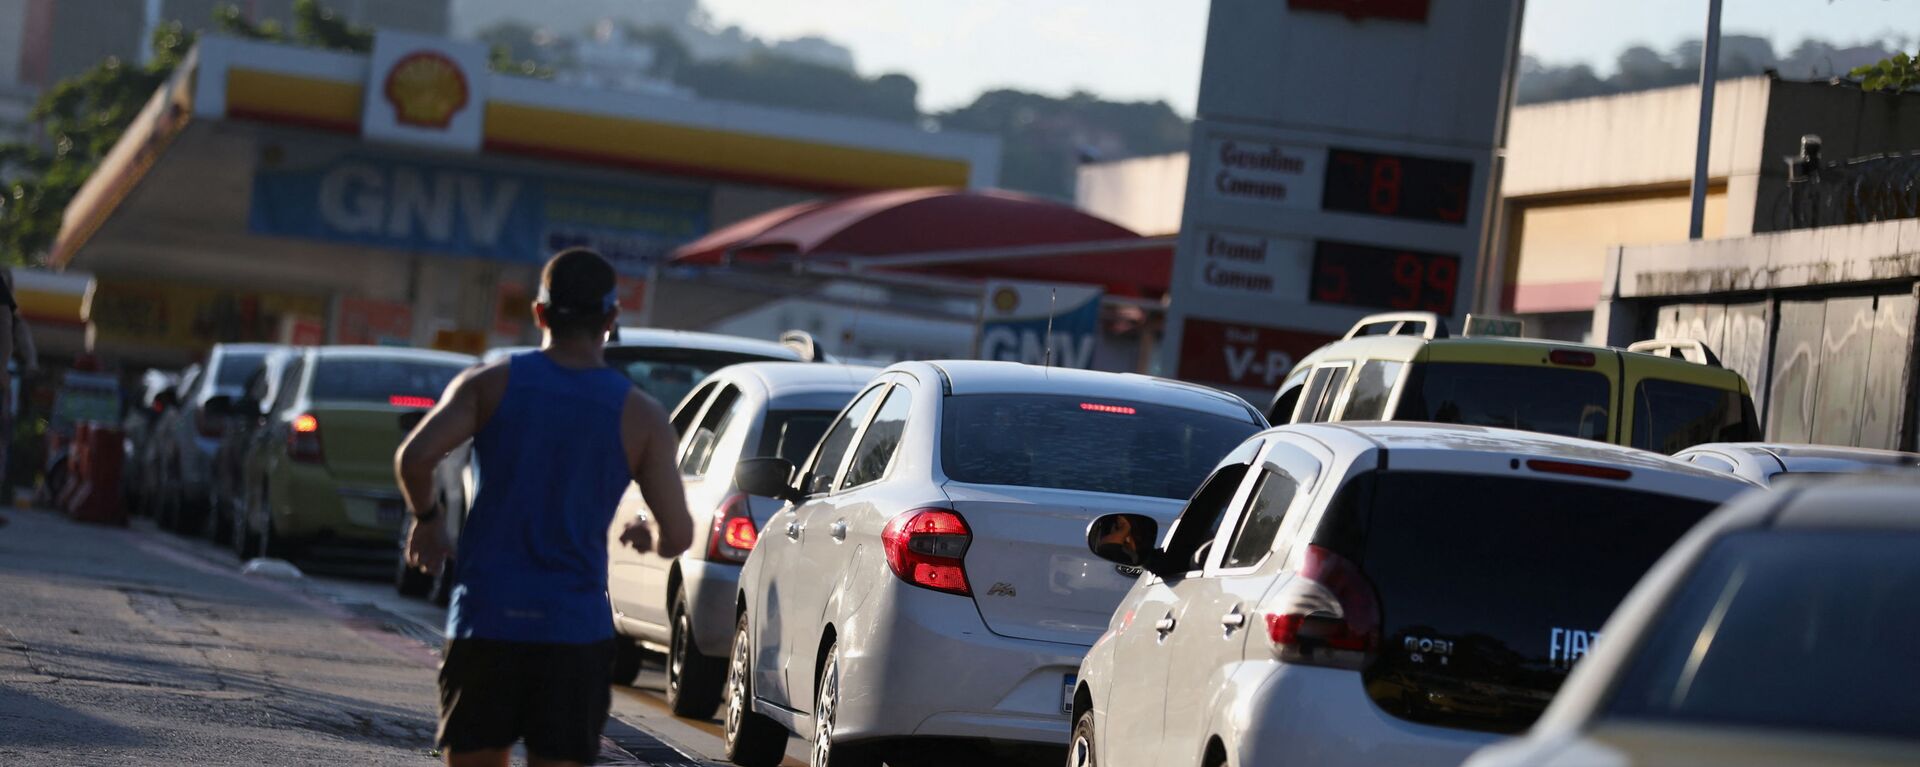 Очередь на заправочной станции Shell после объявления о повышении цен на топливо в Рио-де-Жанейро, Бразилия - Sputnik Молдова, 1920, 14.03.2022